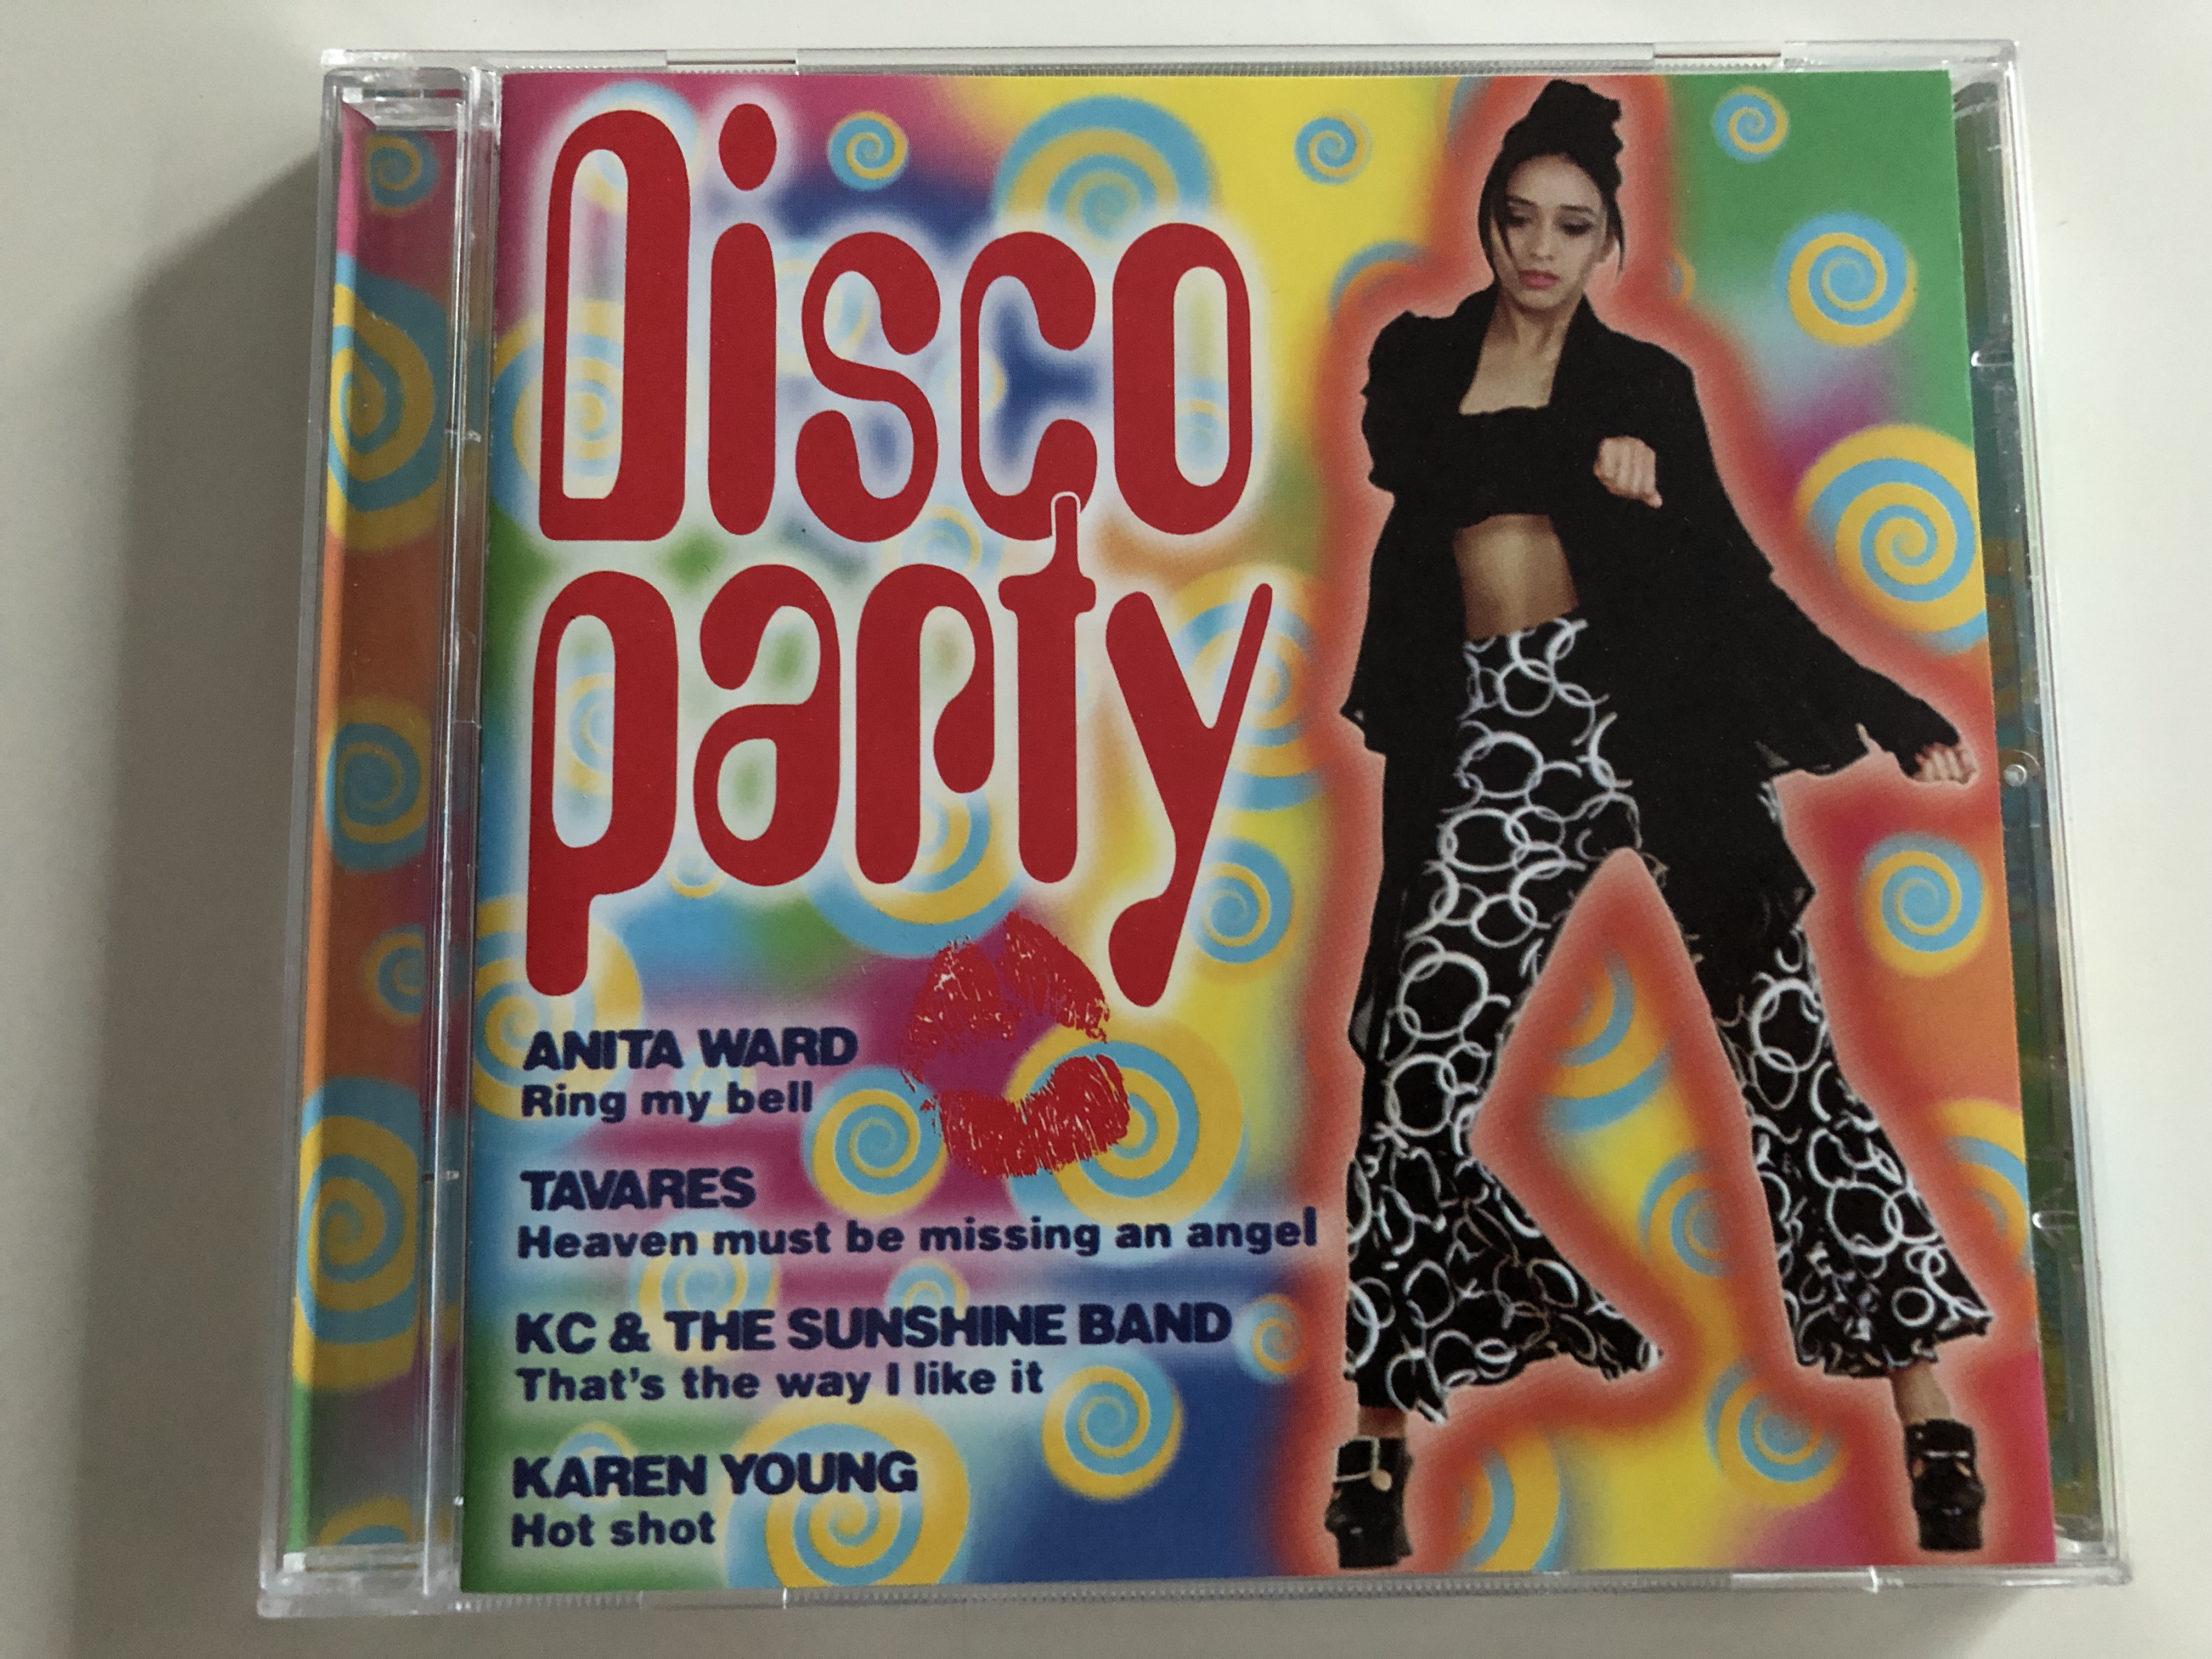 disco-party-anita-ward-tavares-kc-the-sunshine-band-karen-young-audio-cd-1997-disky-dc-880272-1-.jpg